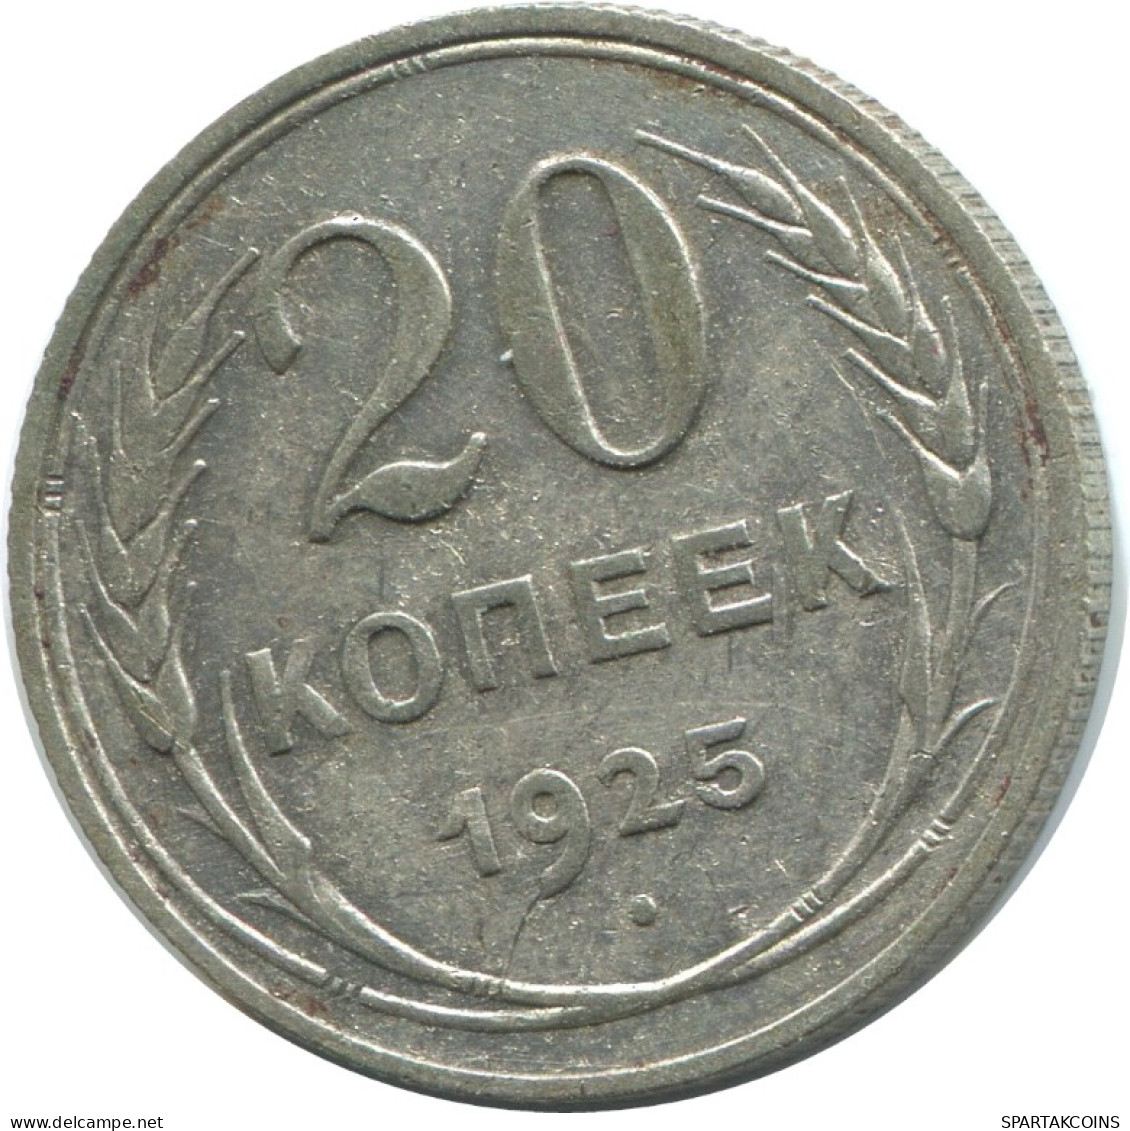 20 KOPEKS 1925 RUSSLAND RUSSIA USSR SILBER Münze HIGH GRADE #AF338.4.D.A - Russia